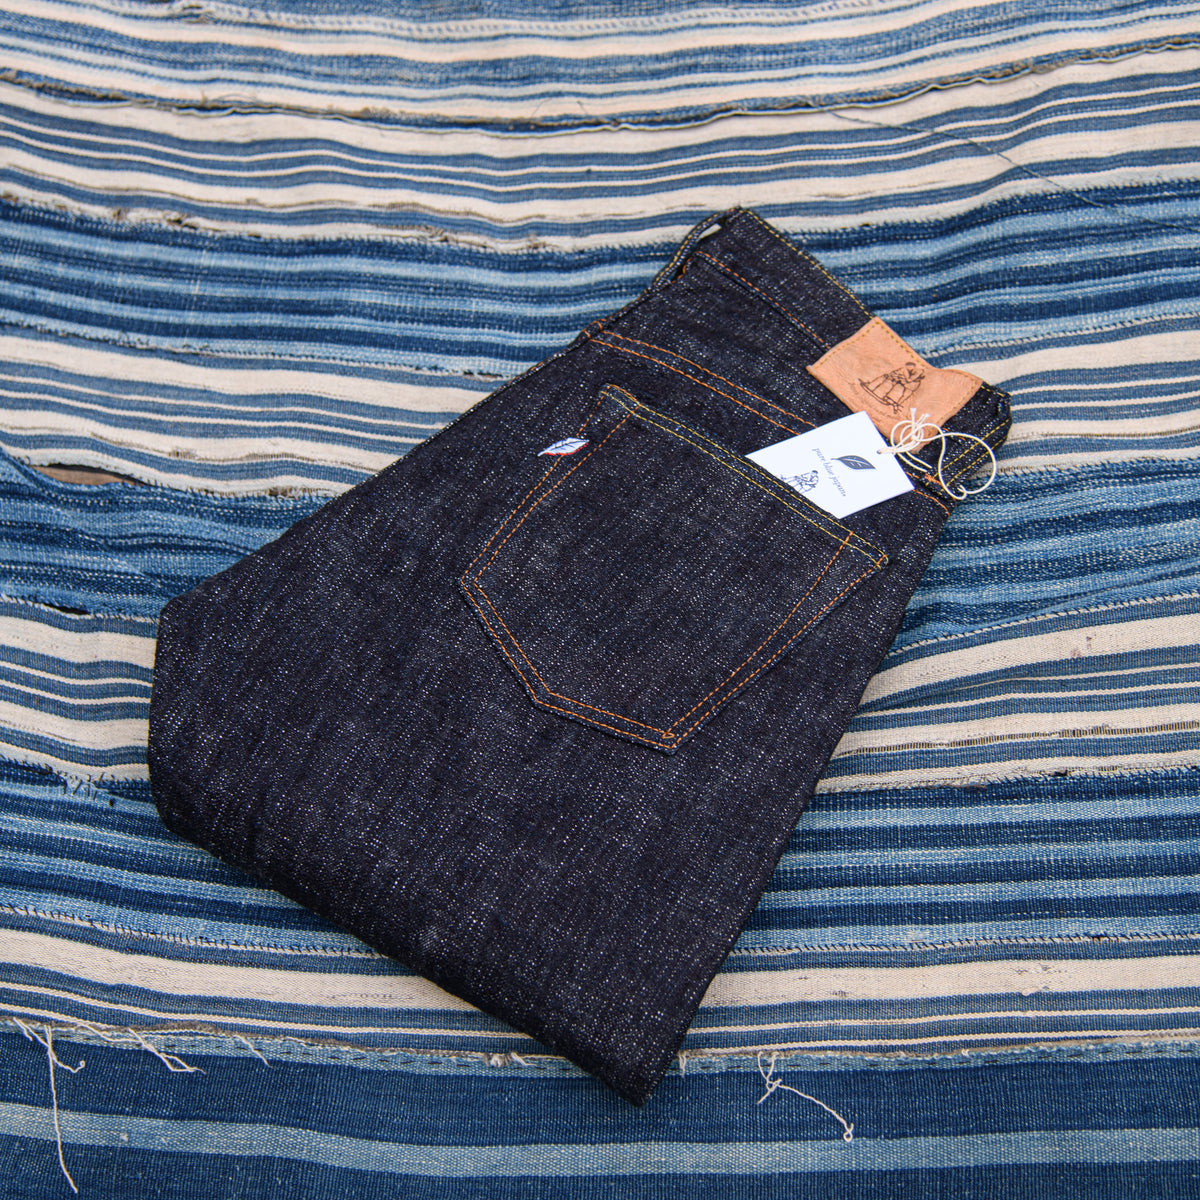 Pure Blue Japan WSB-019 Double Slub Selvedge Jeans - Mildblend